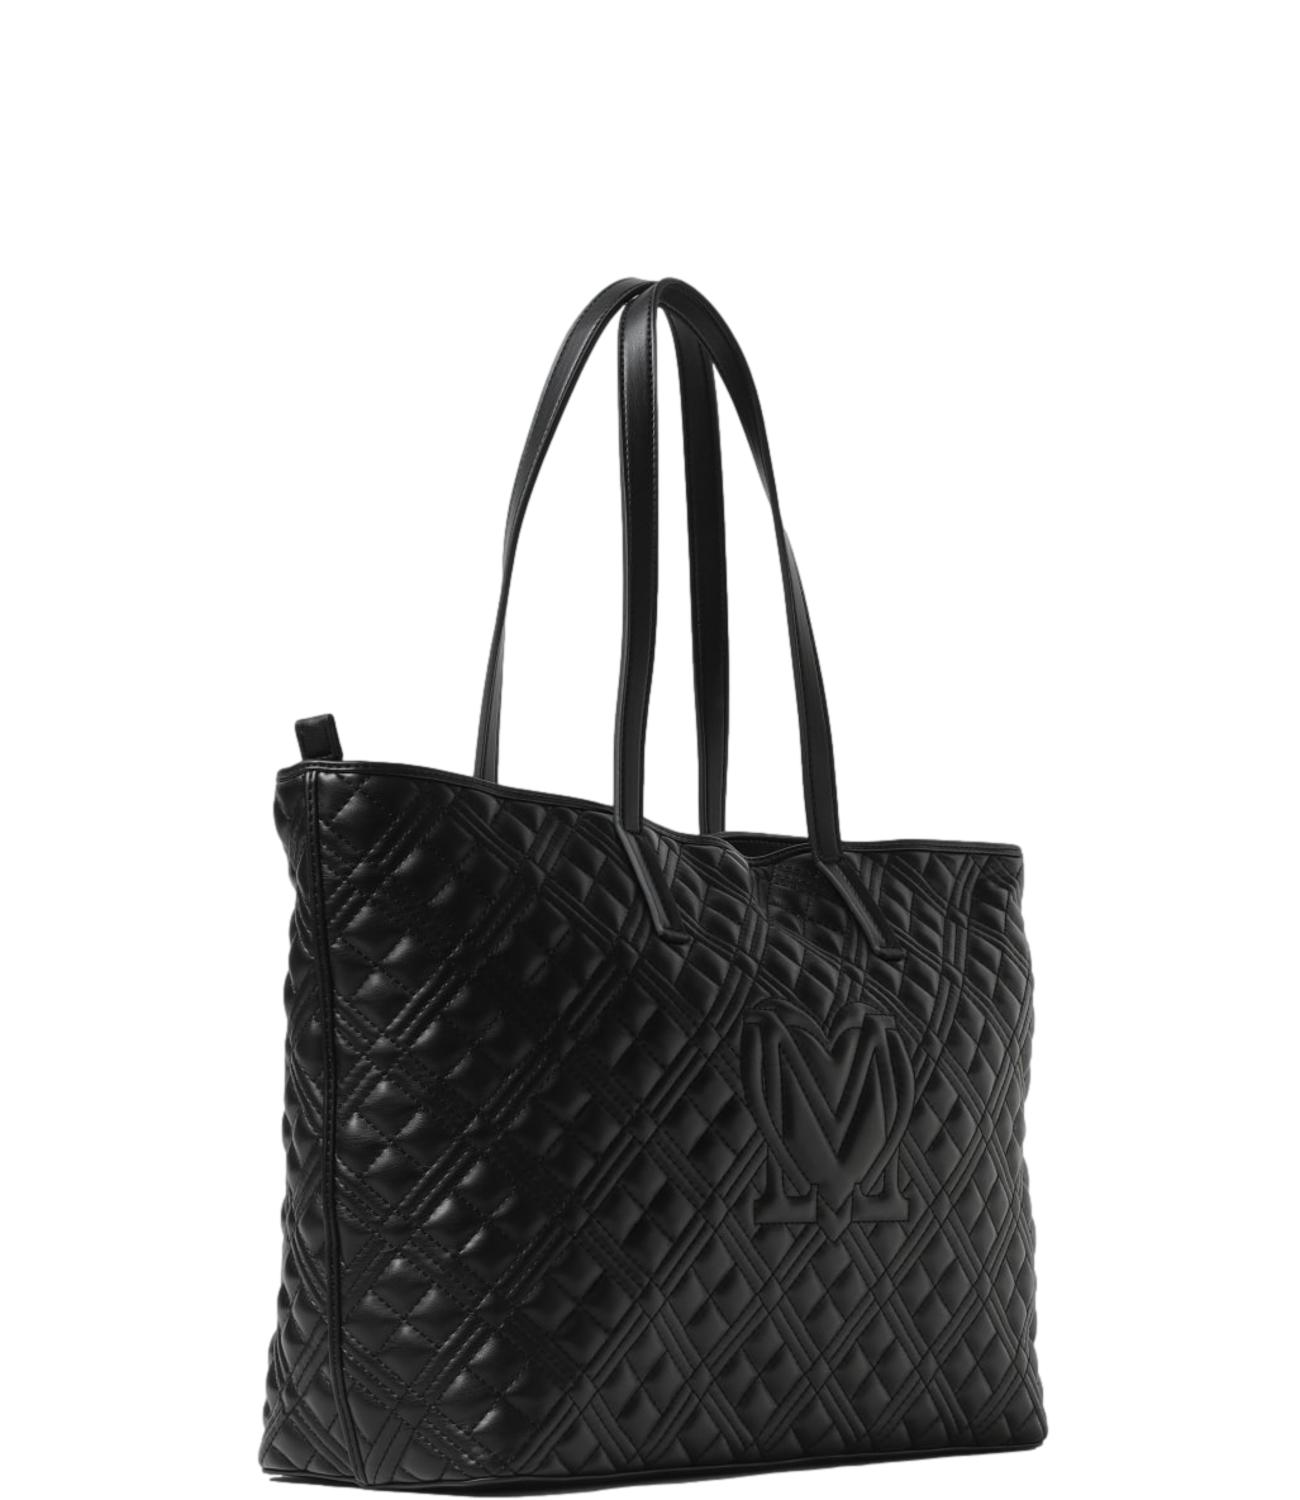 Love Moschino Women's black bag